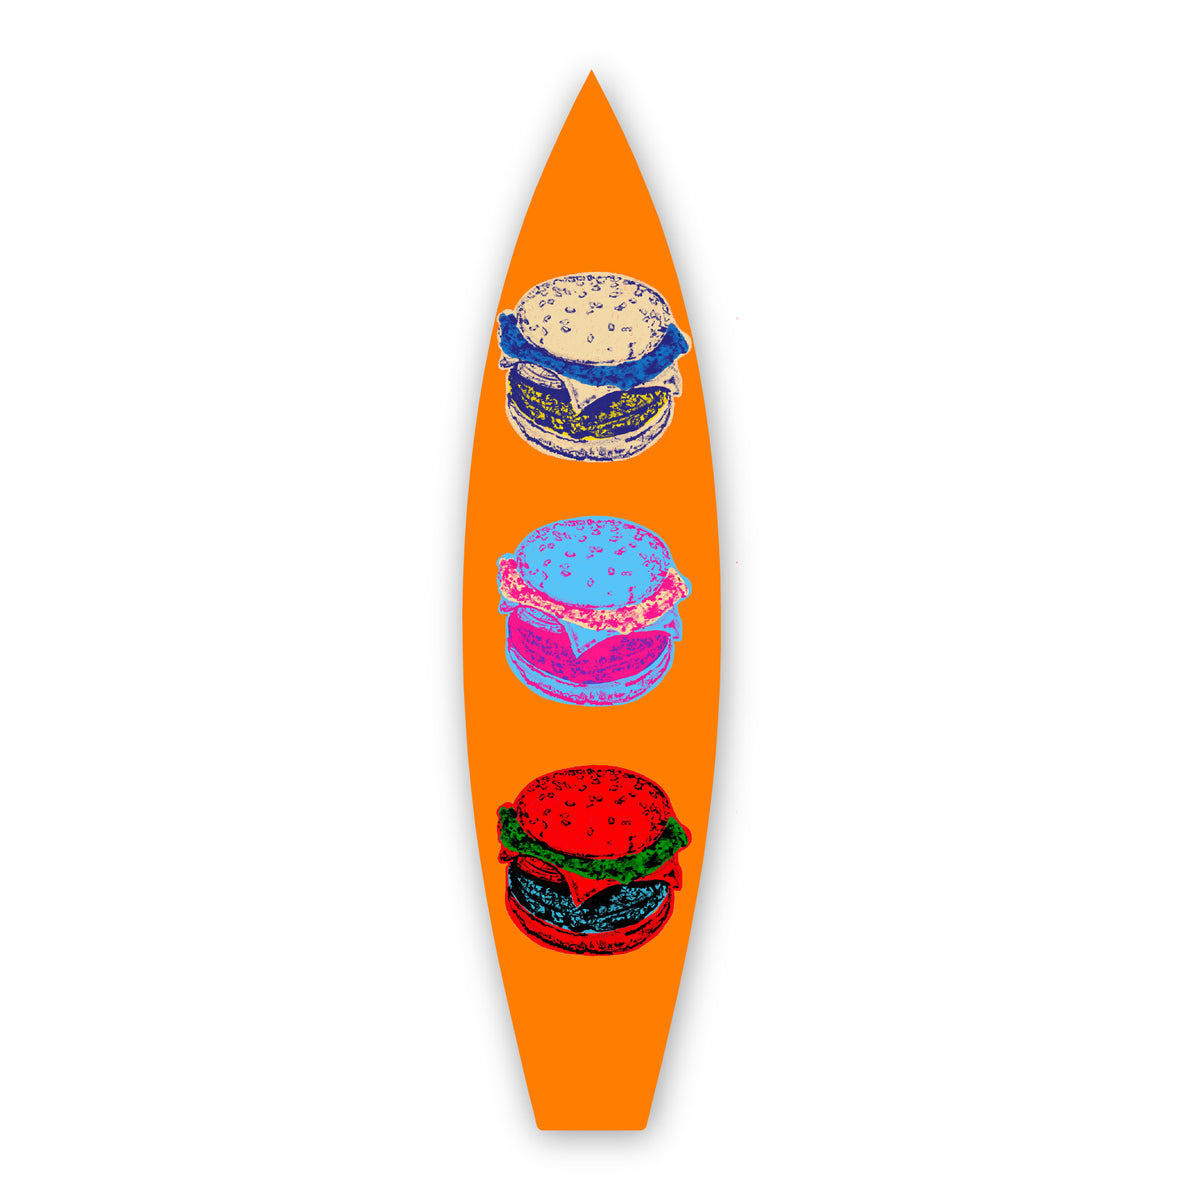 Retro Burger - Surfboard Art